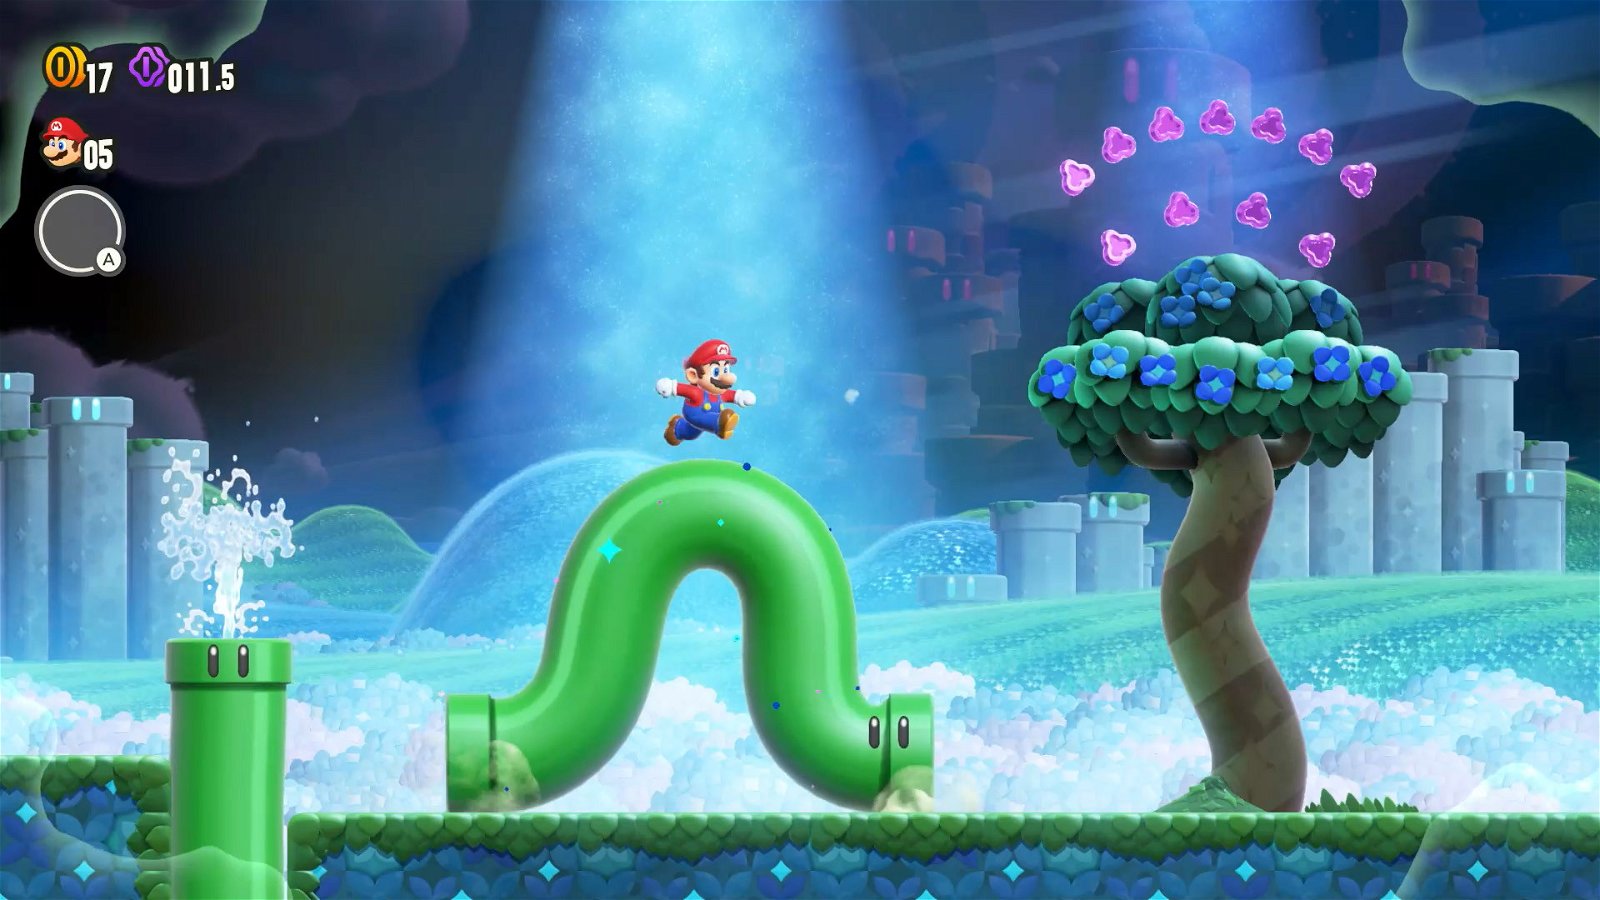 Immagine di Acquista Super Mario Wonder da Mediaworld, e ricevi un peluche in regalo!